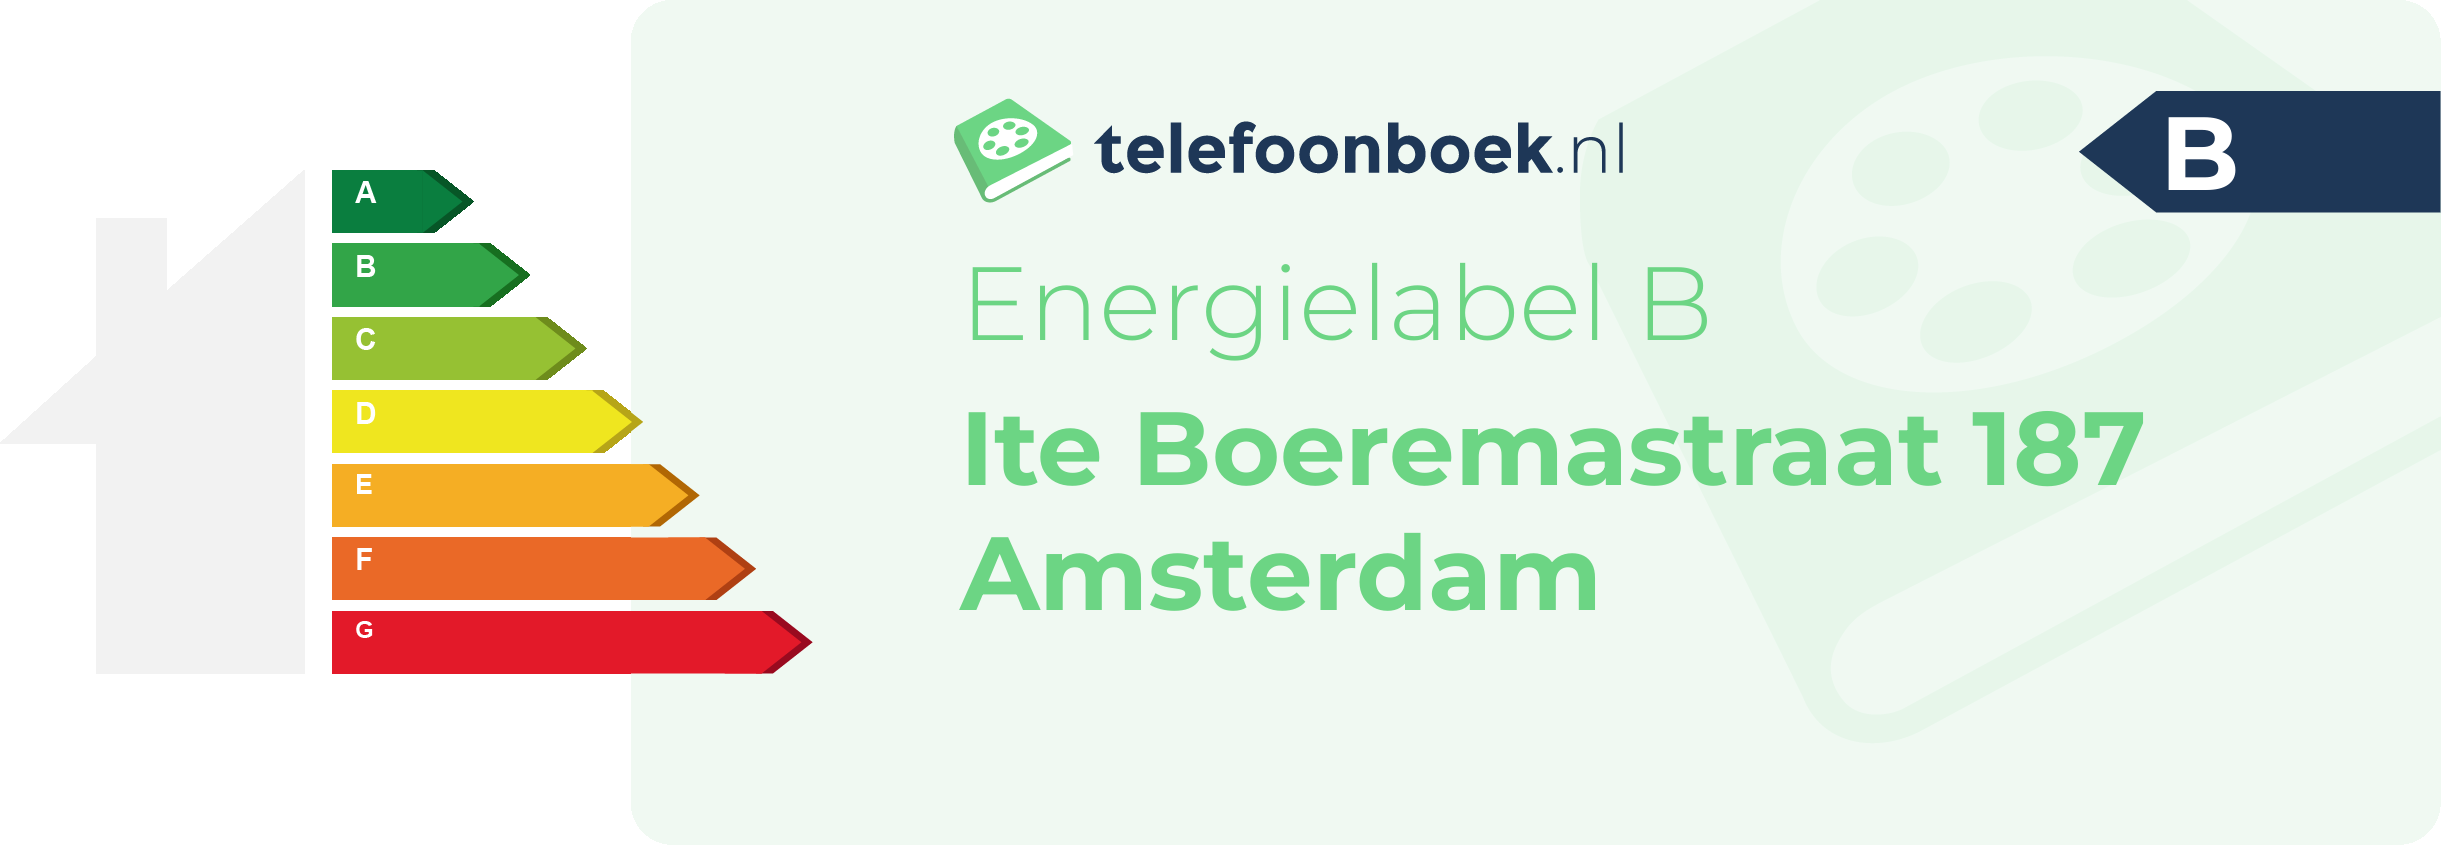 Energielabel Ite Boeremastraat 187 Amsterdam